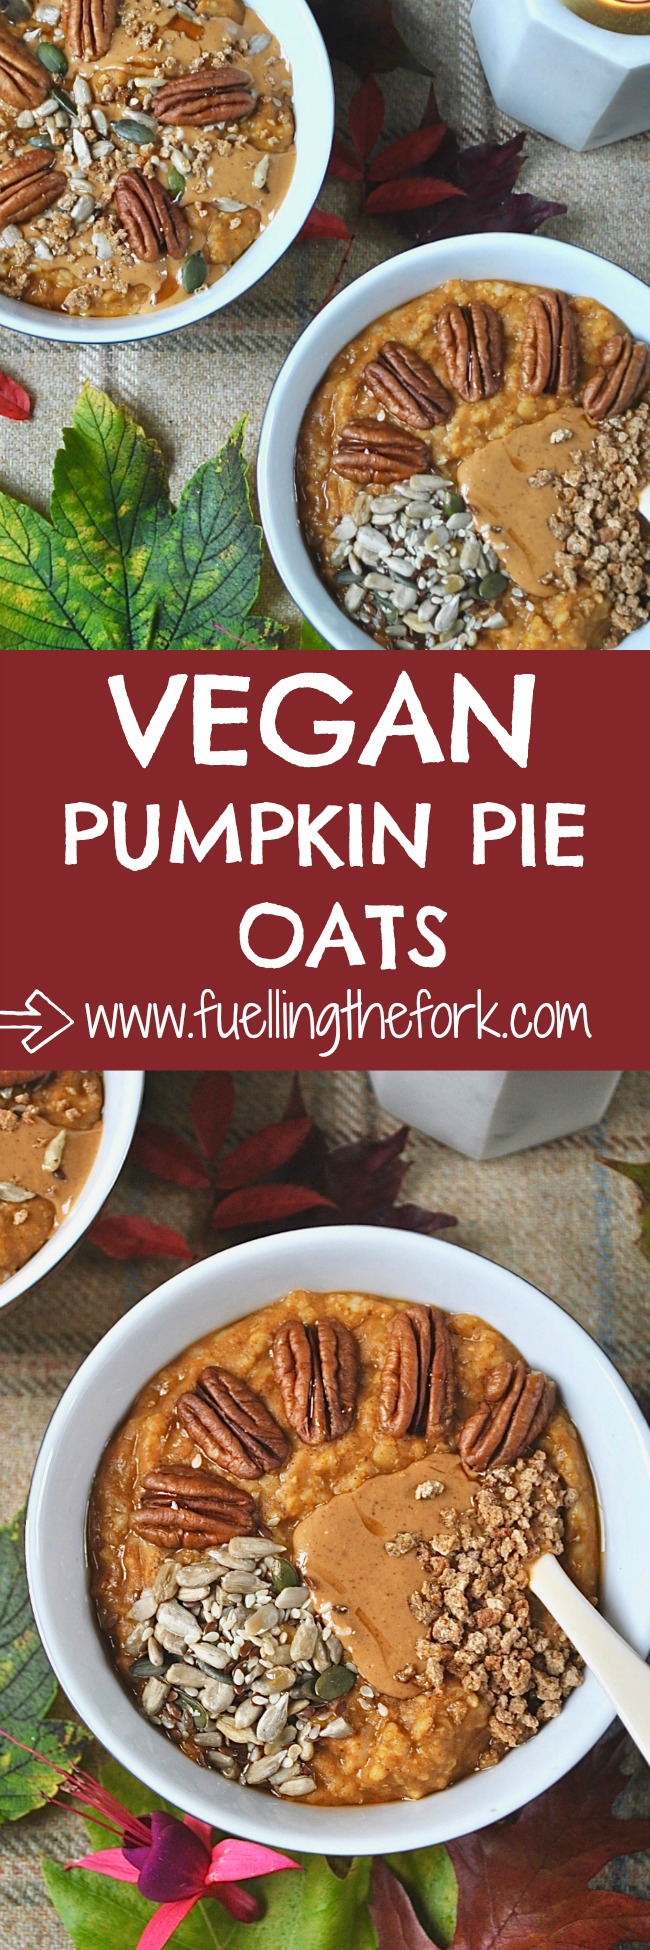 Vegan Pumpkin Pie Oats